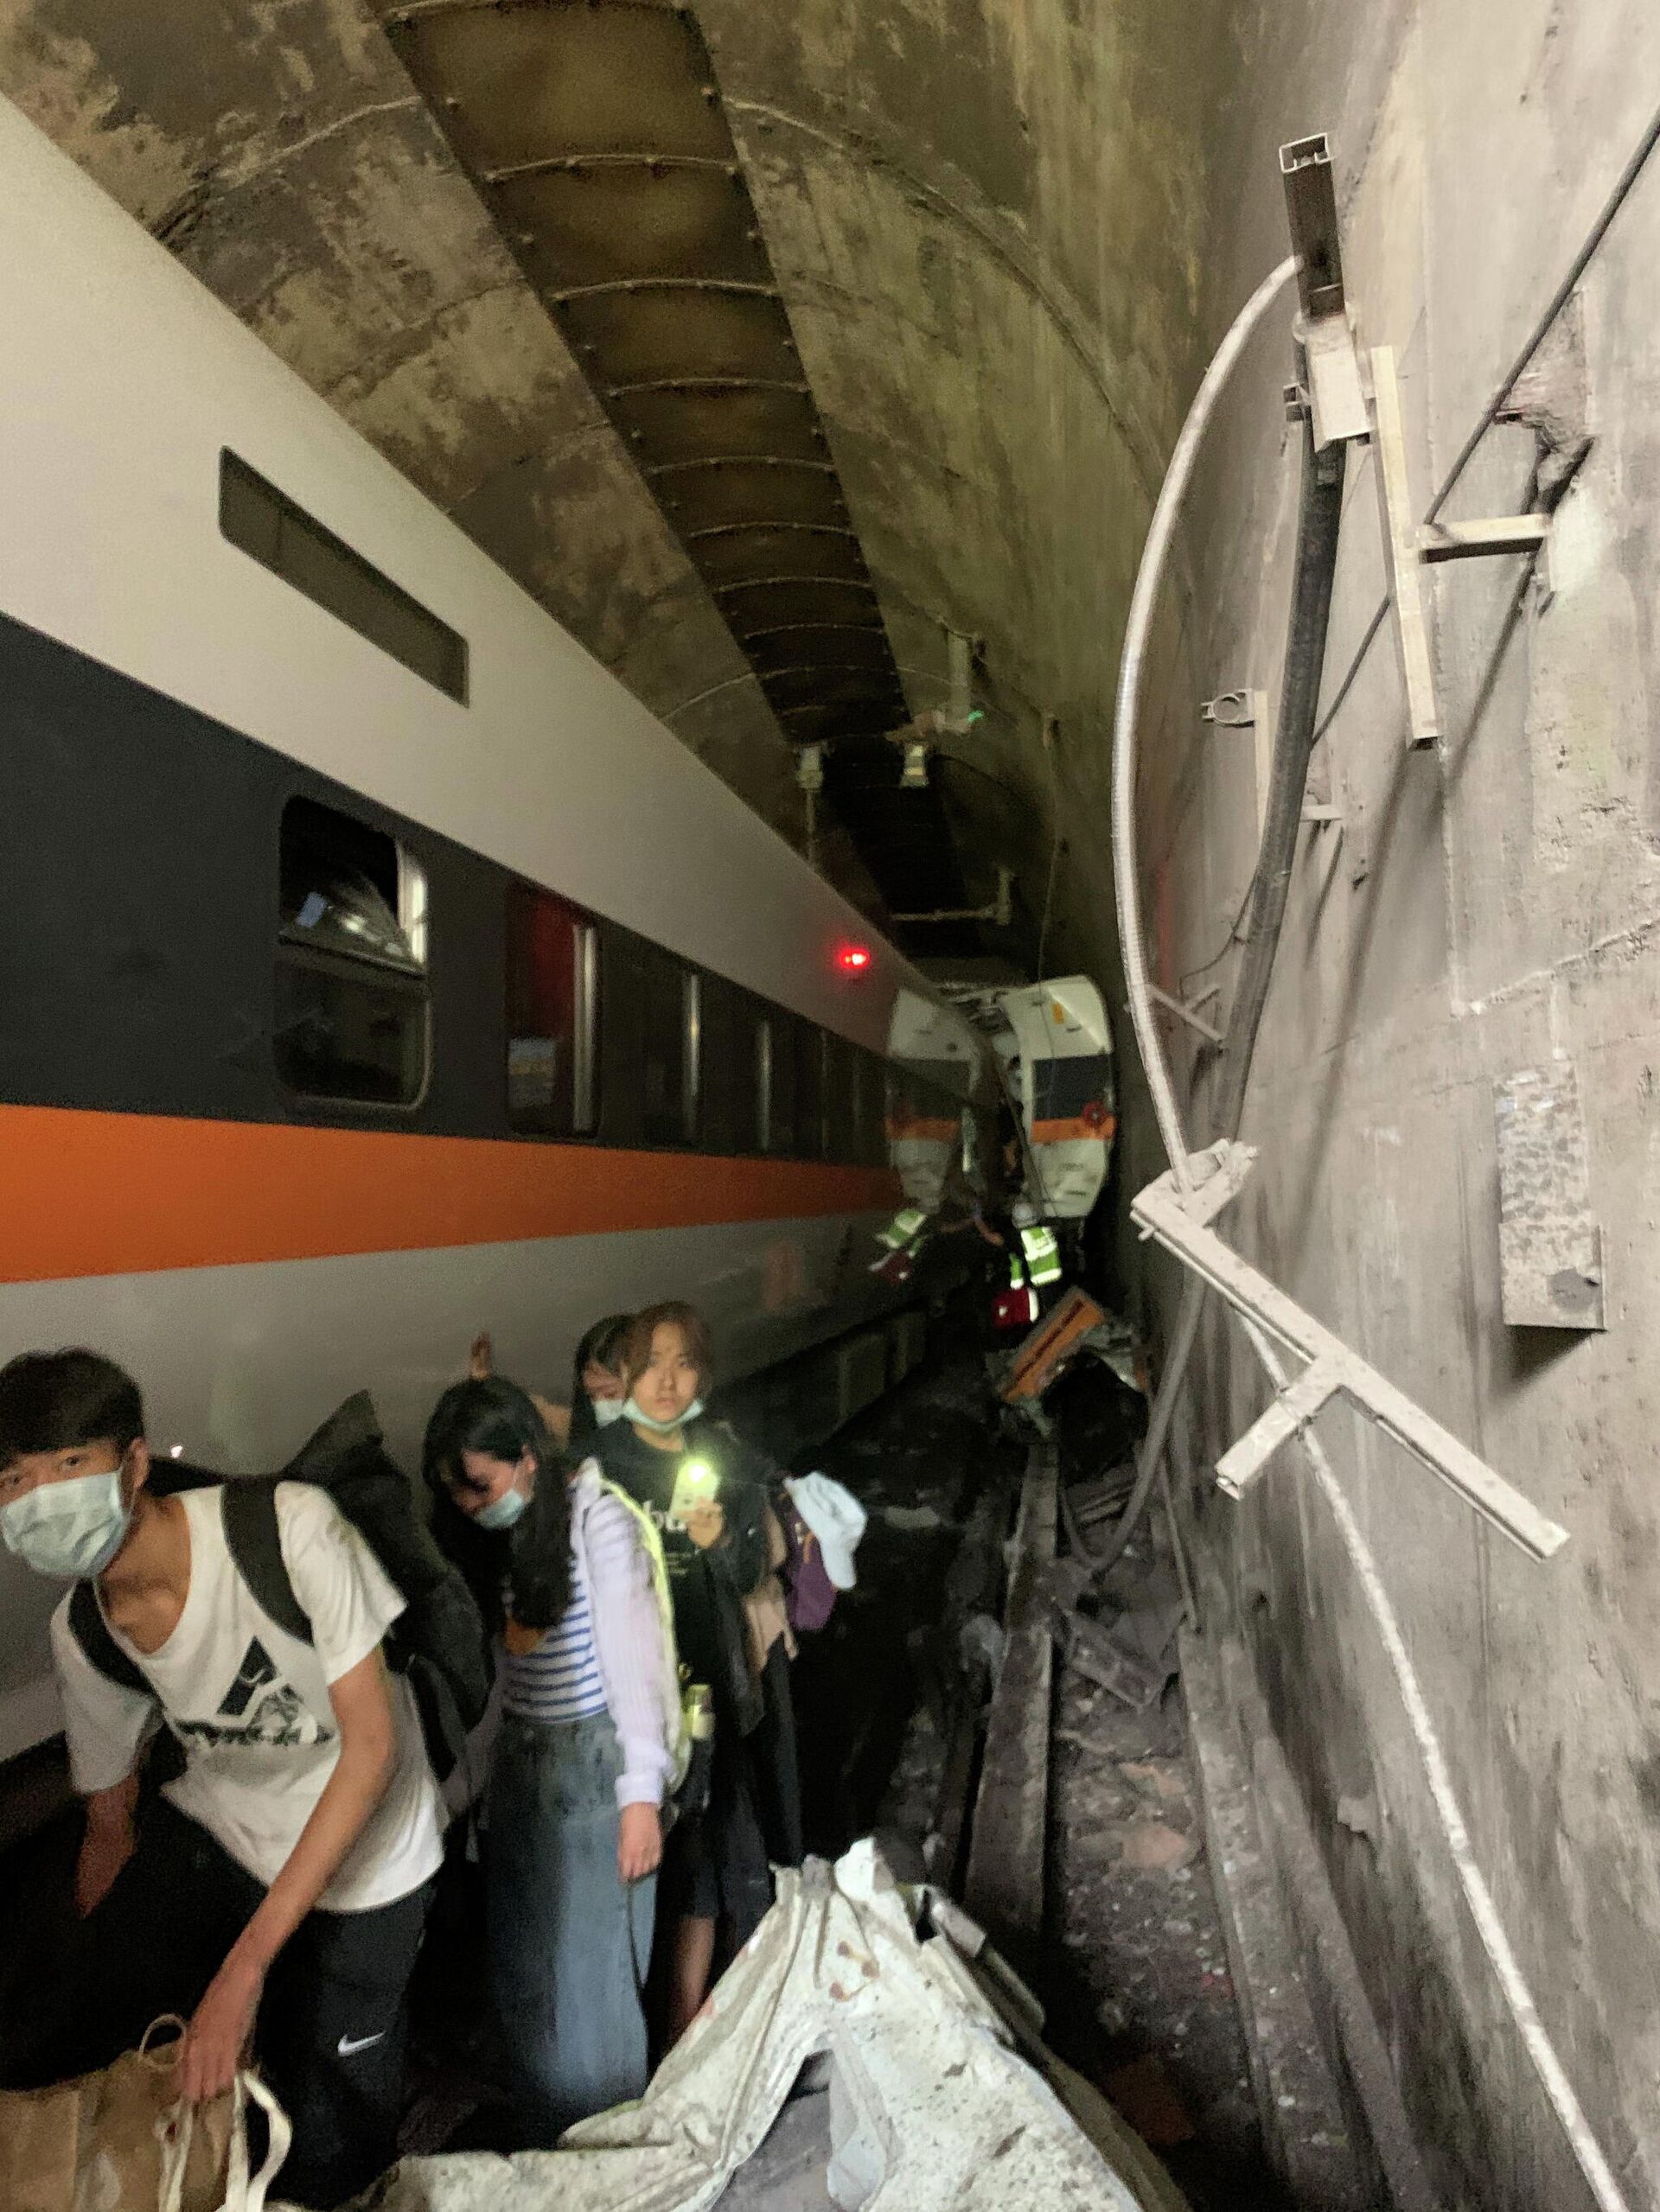 Трагедия на Тайване: поезд сошел с рельсов, есть жертвы - Sputnik Узбекистан, 1920, 02.04.2021